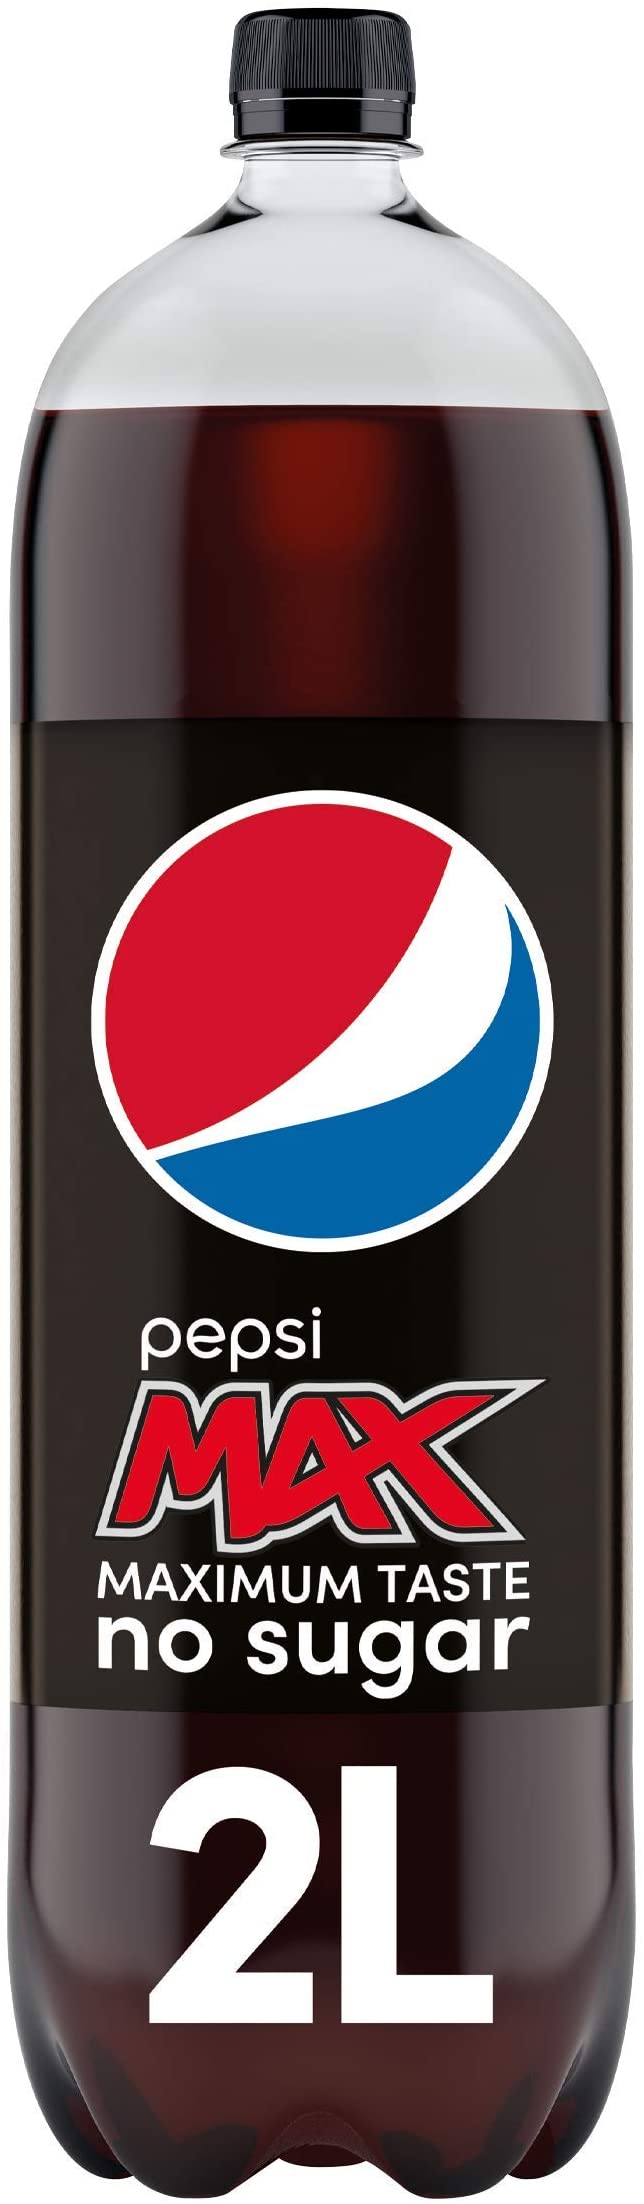 Pepsi Max No Sugar Bottle, 2L